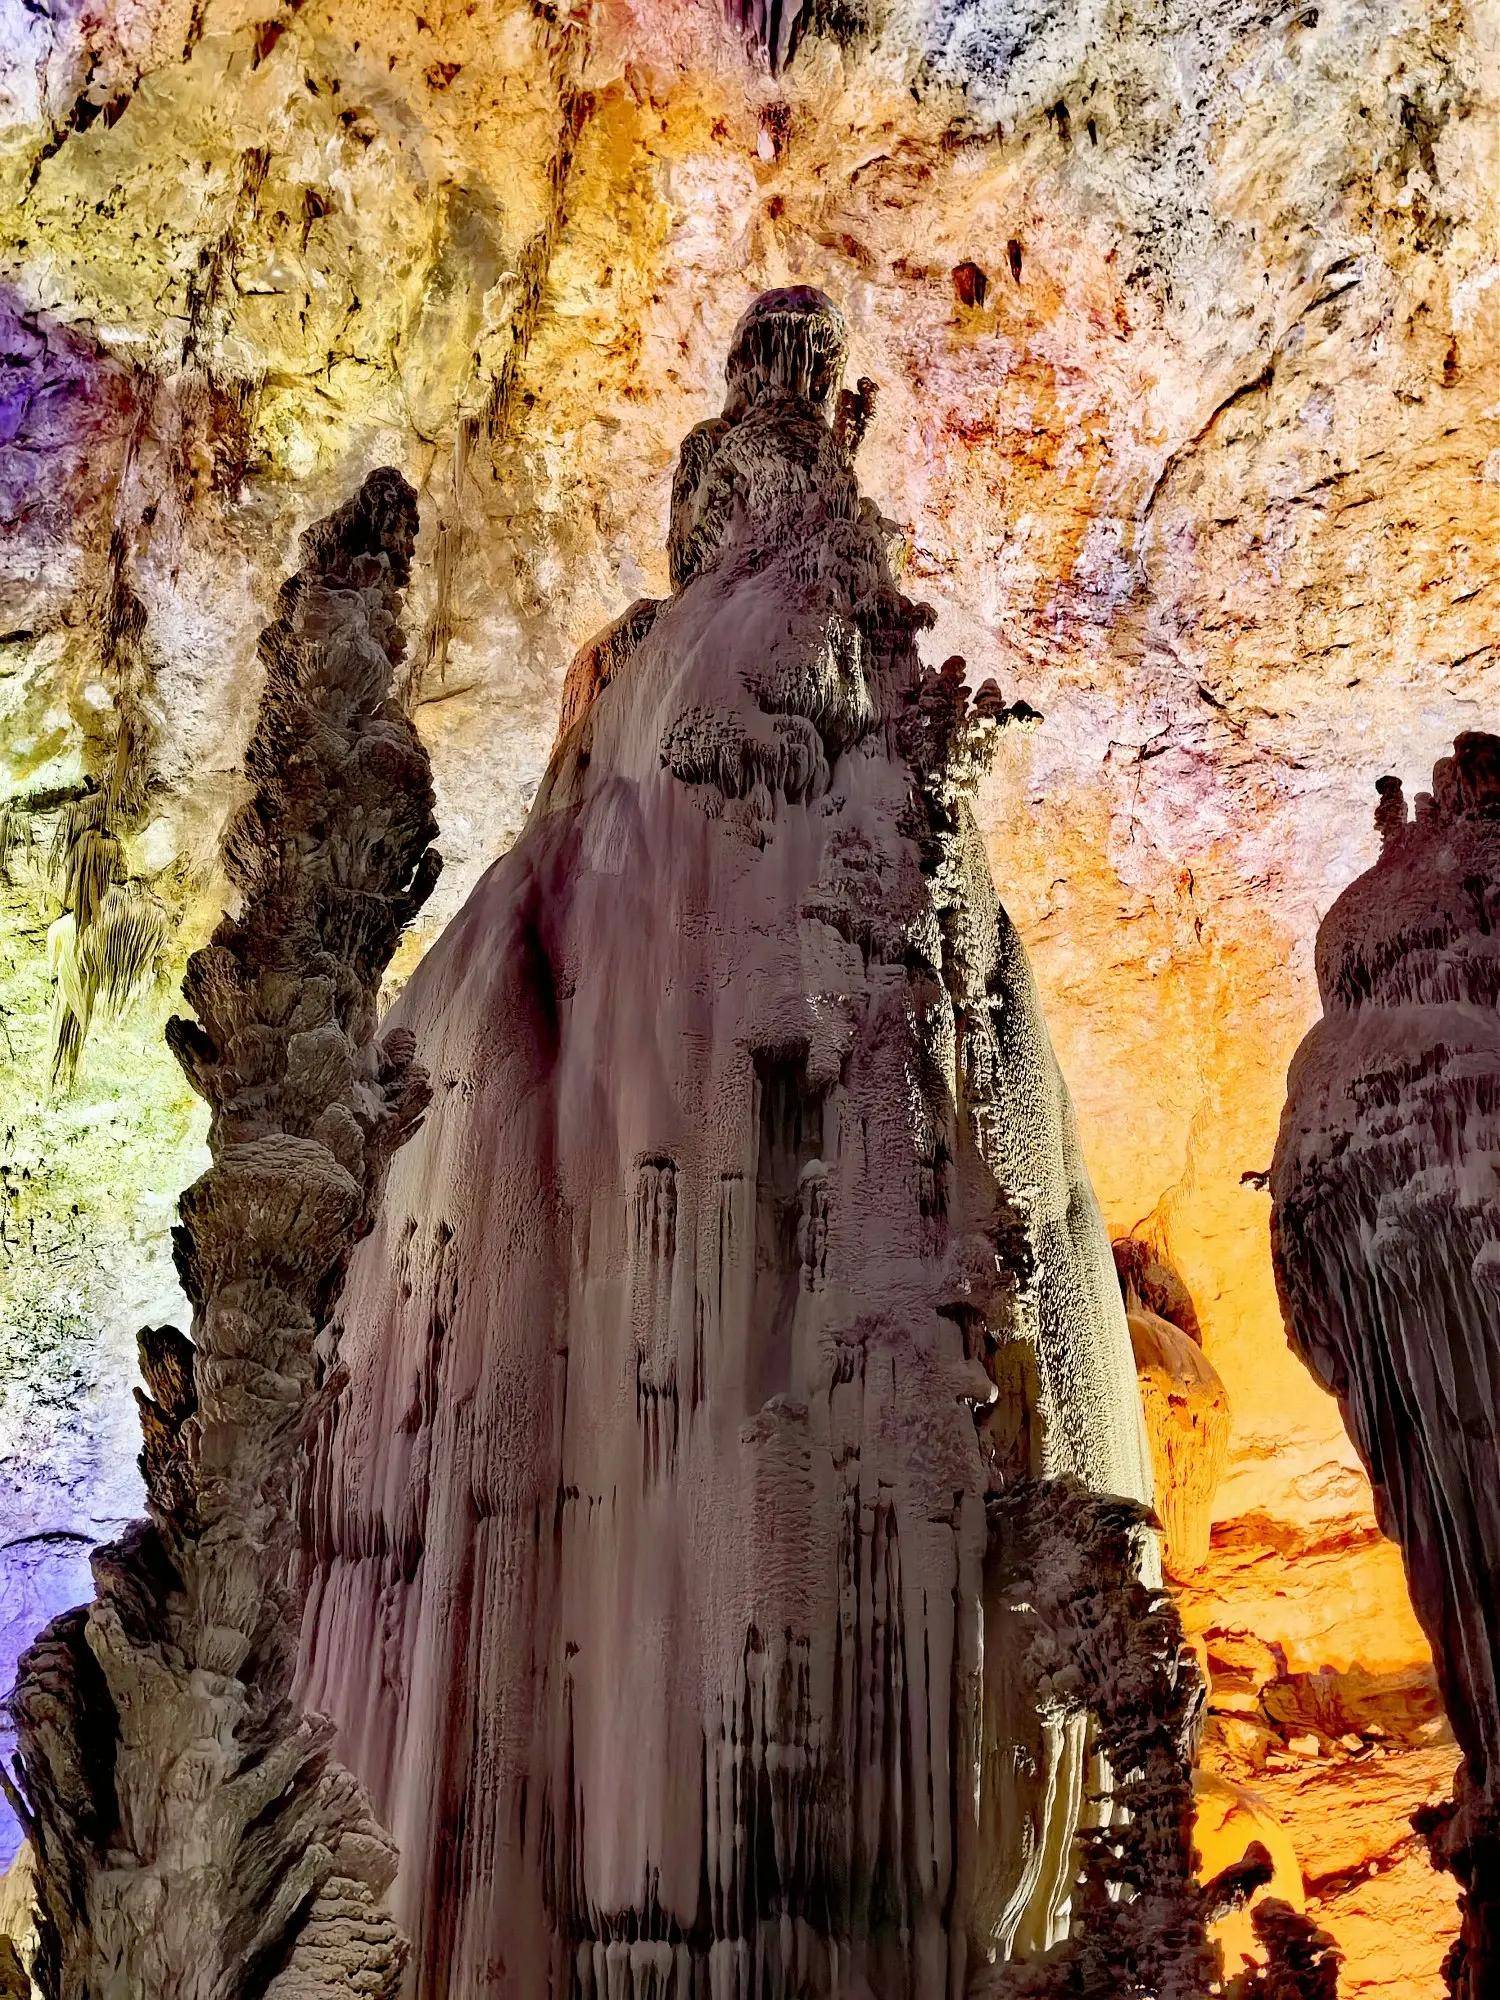 贵州毕节:这个洞穴人像钟乳石妙绝天下,不用彩灯装饰朴素美